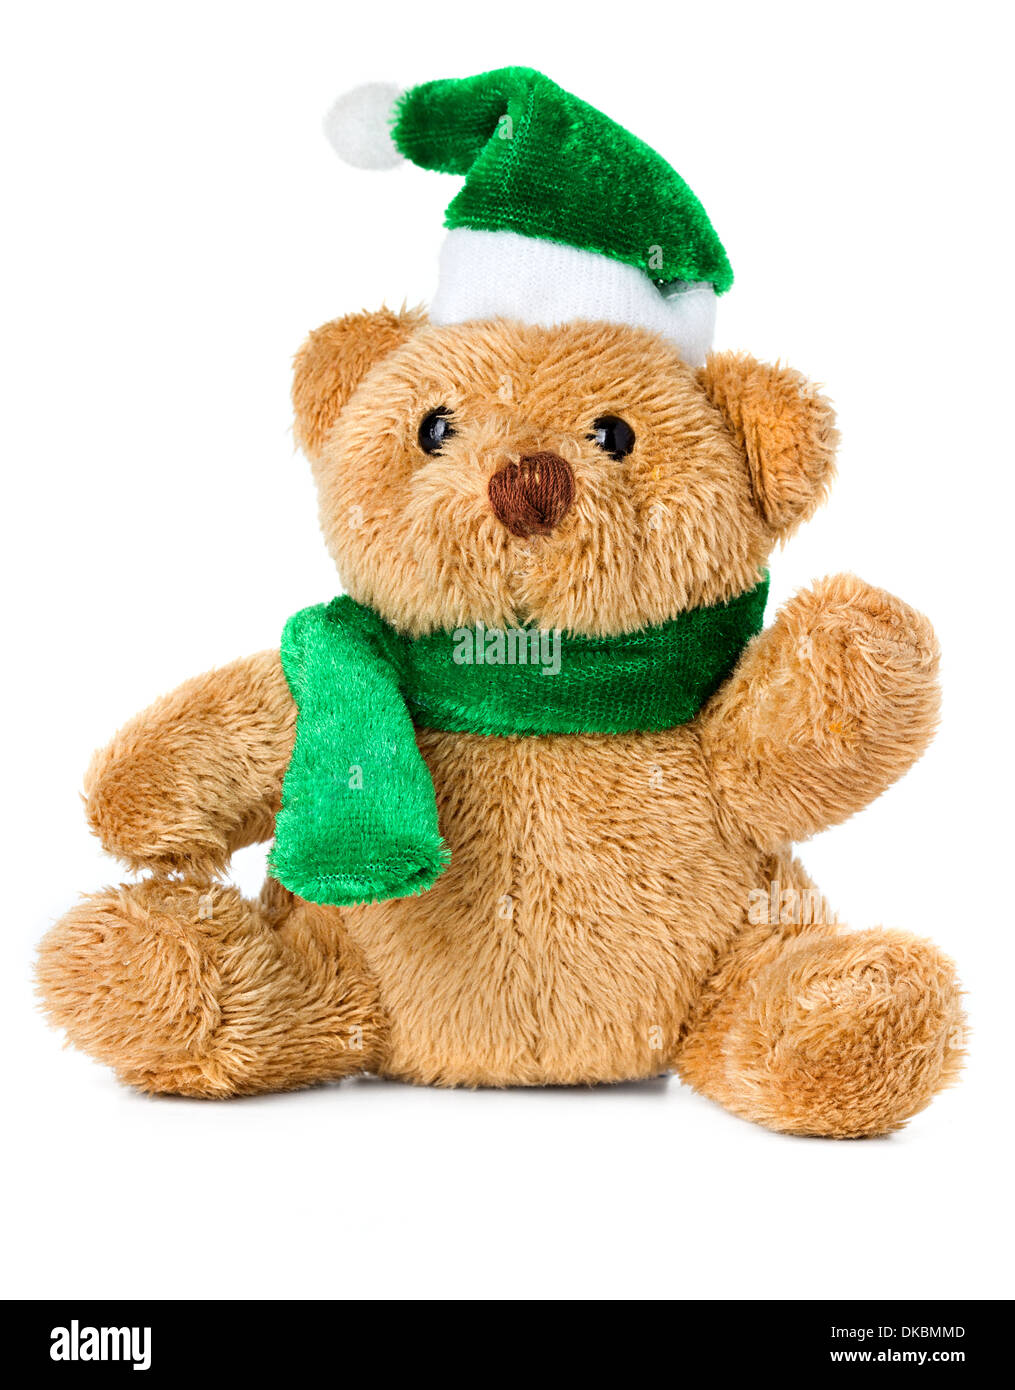 teddy bear christmas toy Stock Photo